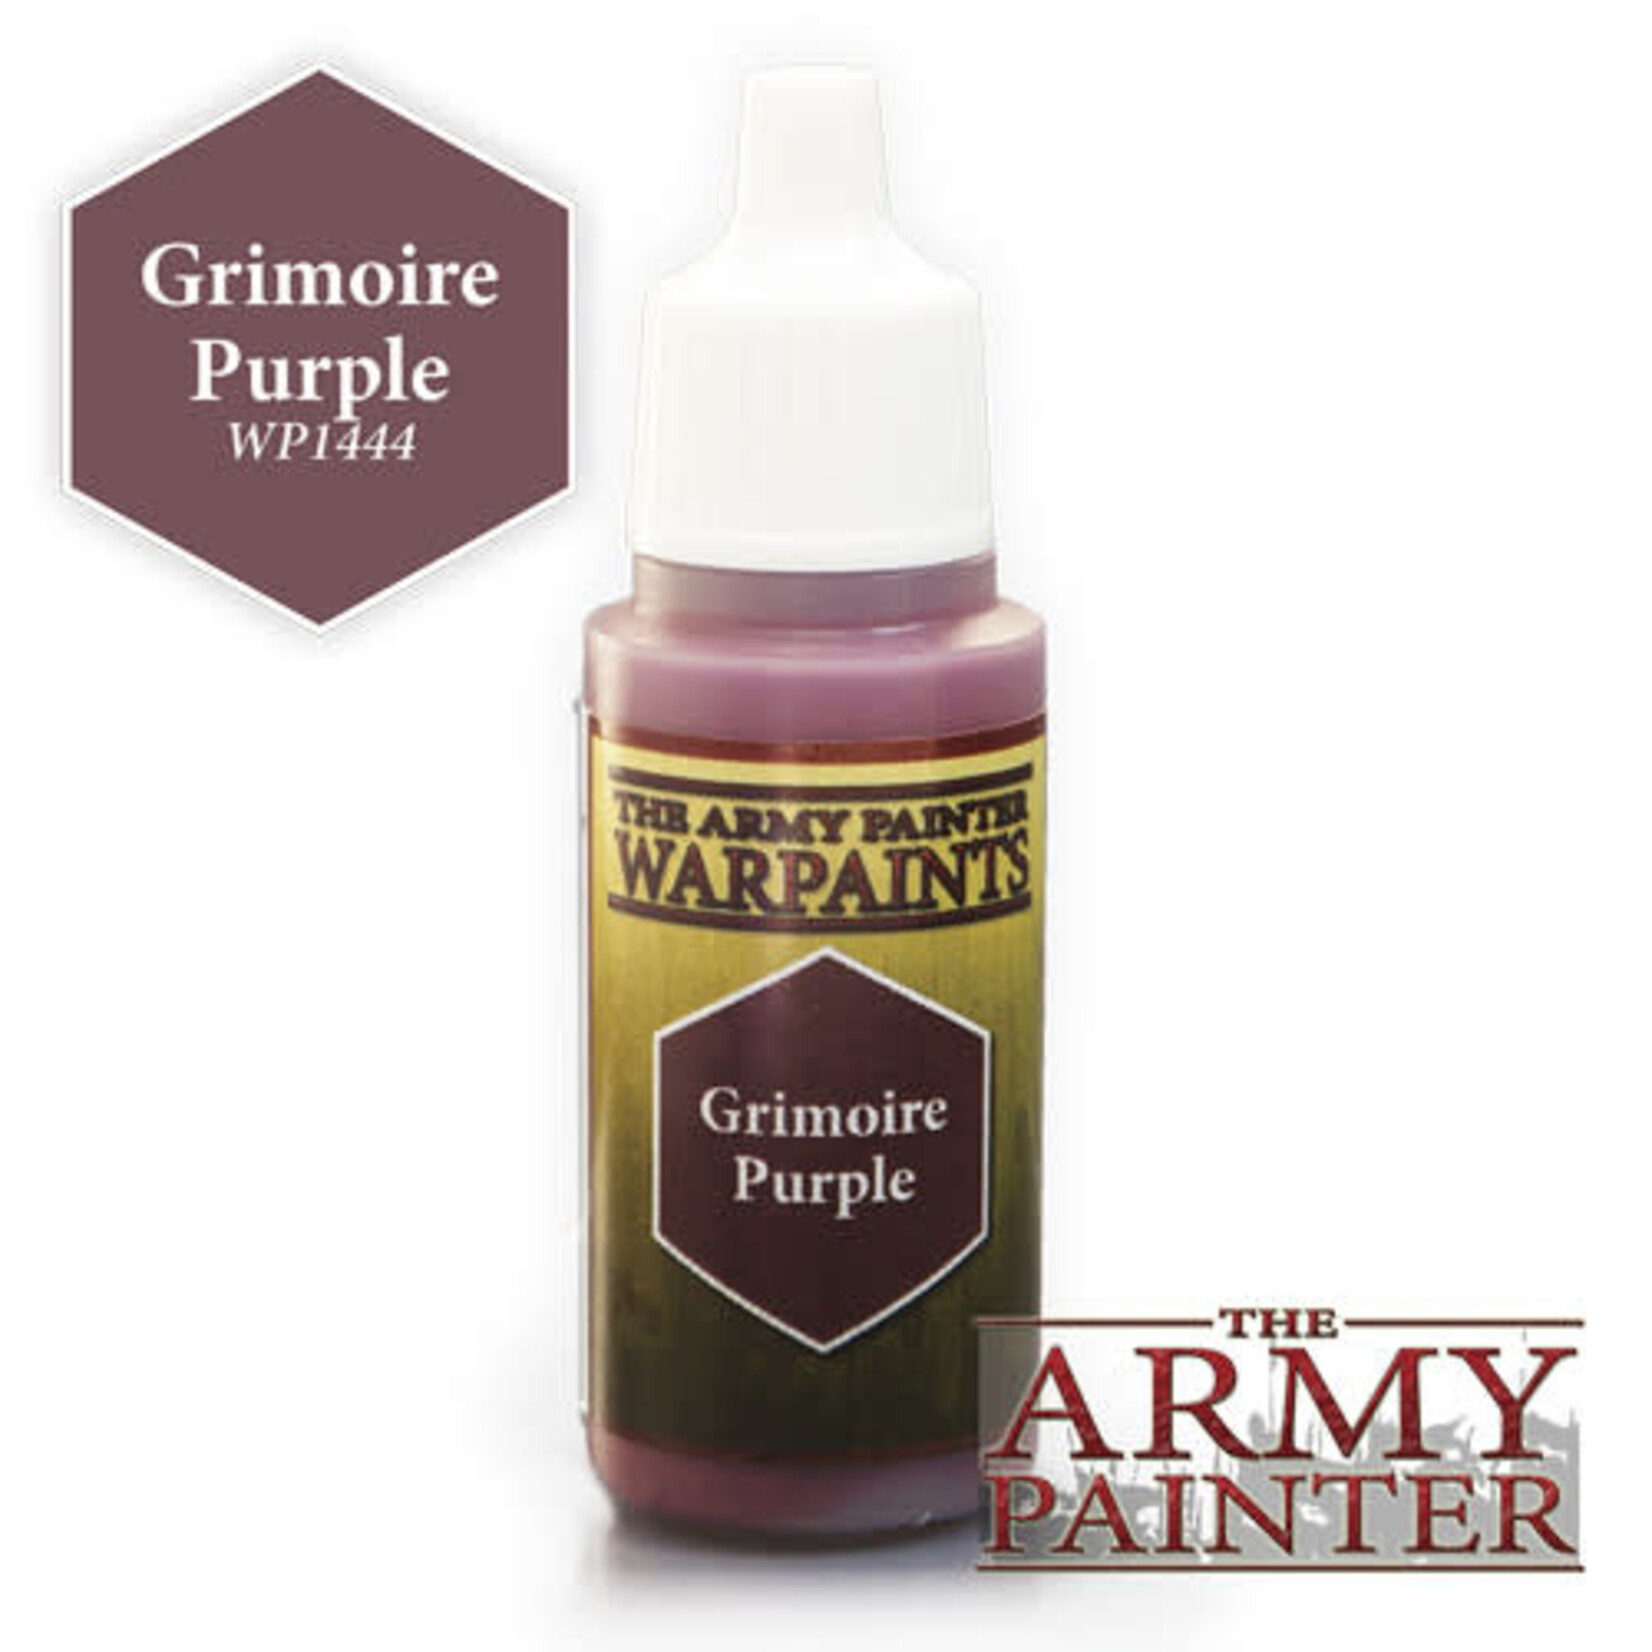 The Army Painter Warpaints: Grimoire Purple 18ml